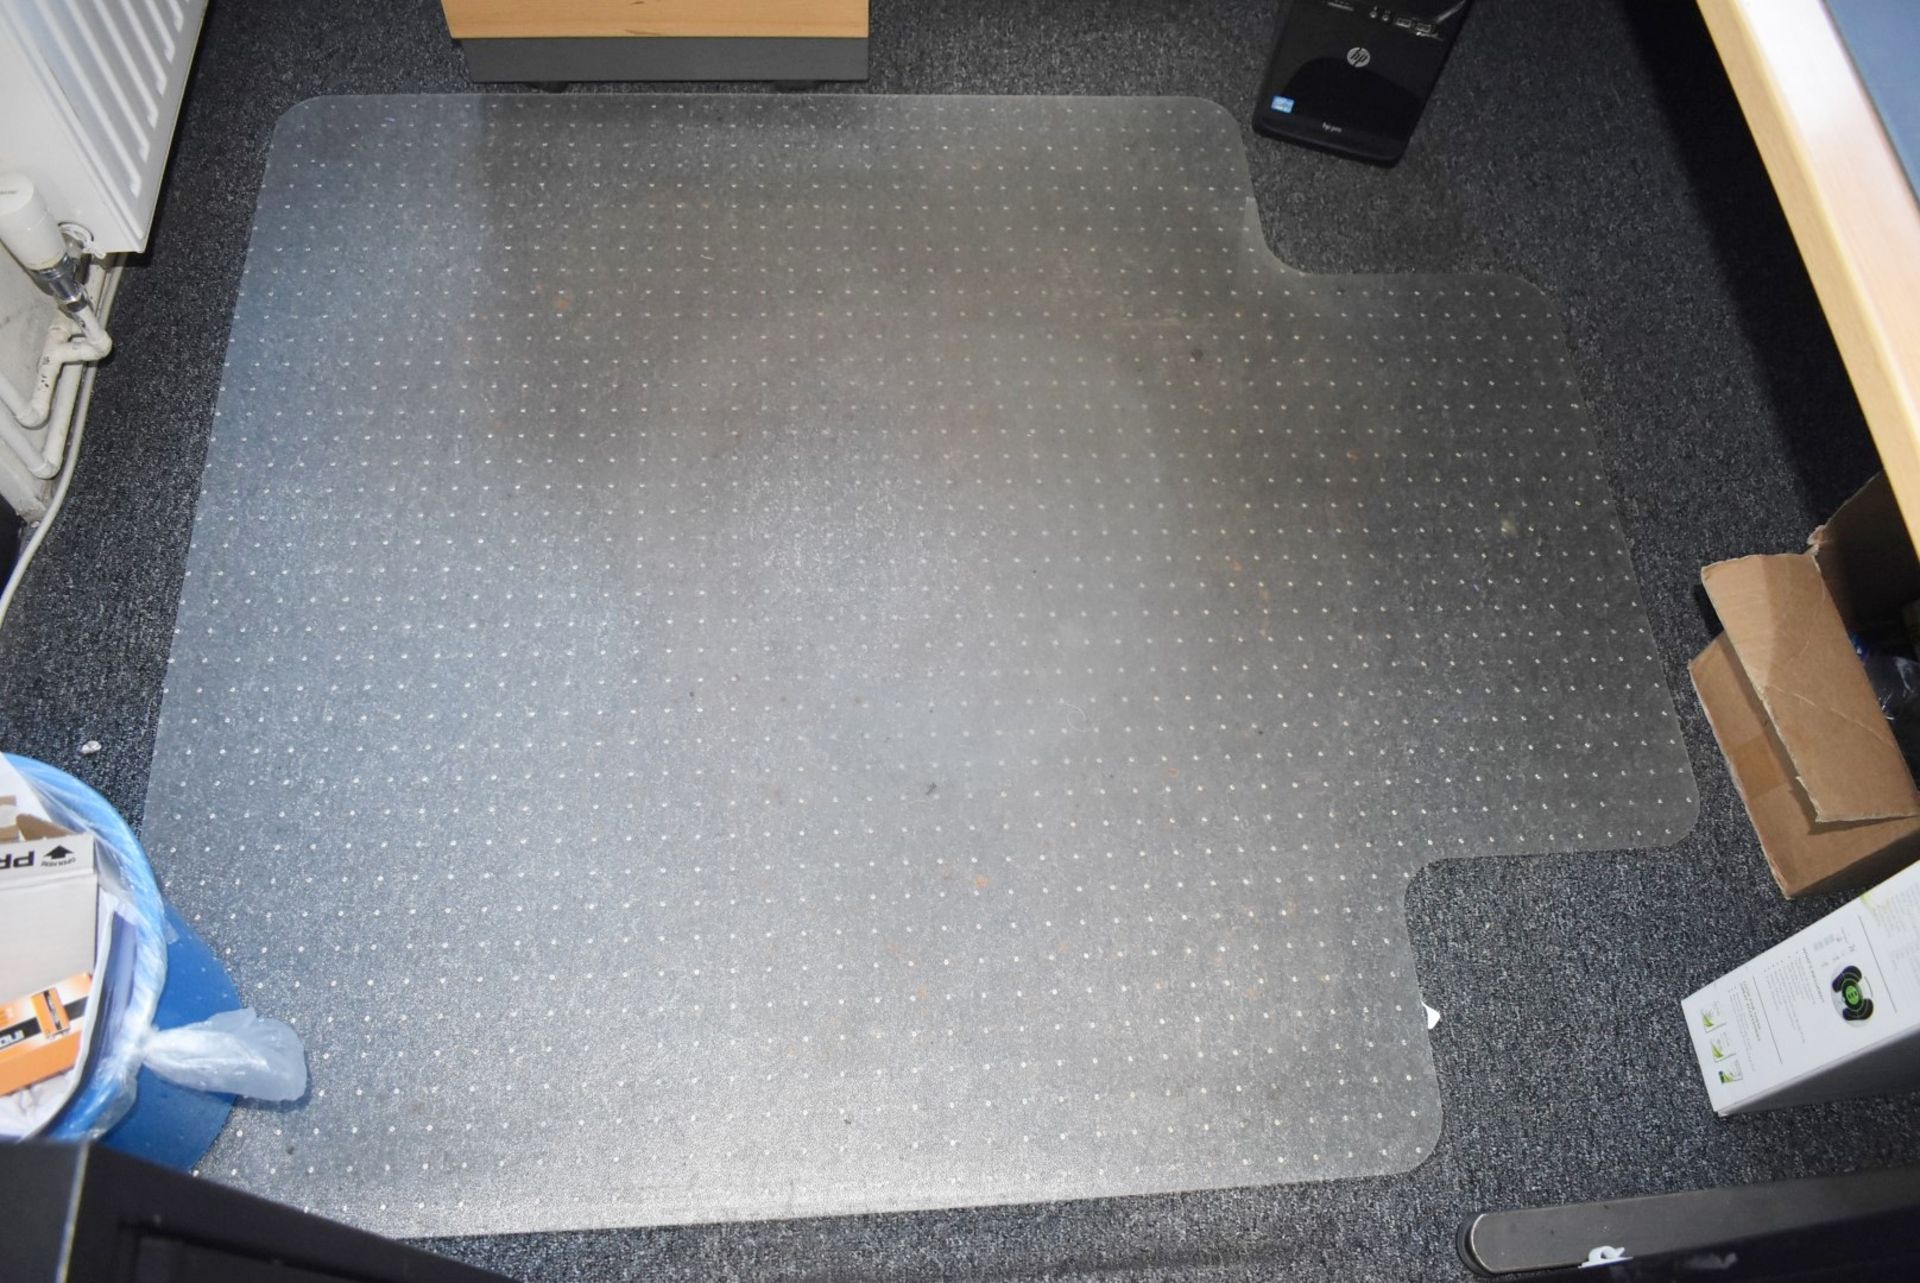 1 x Carpet Protector Mat - Ref: C216 - CL816 - Location: Birmingham, B45Collection De